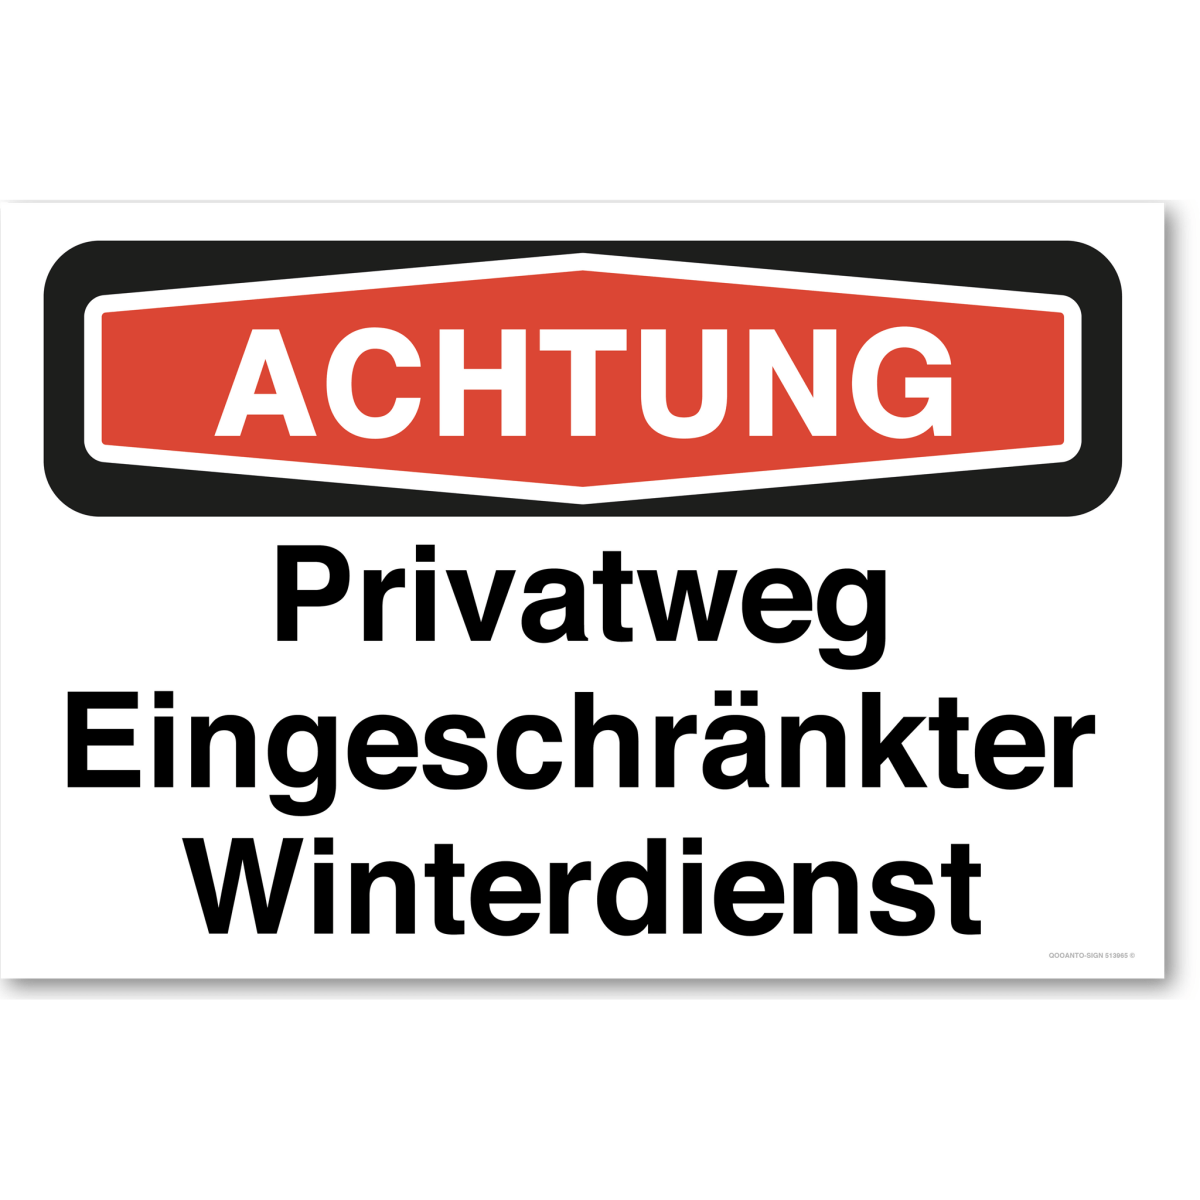 Achtung Privatweg Eingeschränkter Winterdienst (Nicht Kursiv) Schild aus Alu-Verbund mit UV-Schutz - QOOANTO-SIGN